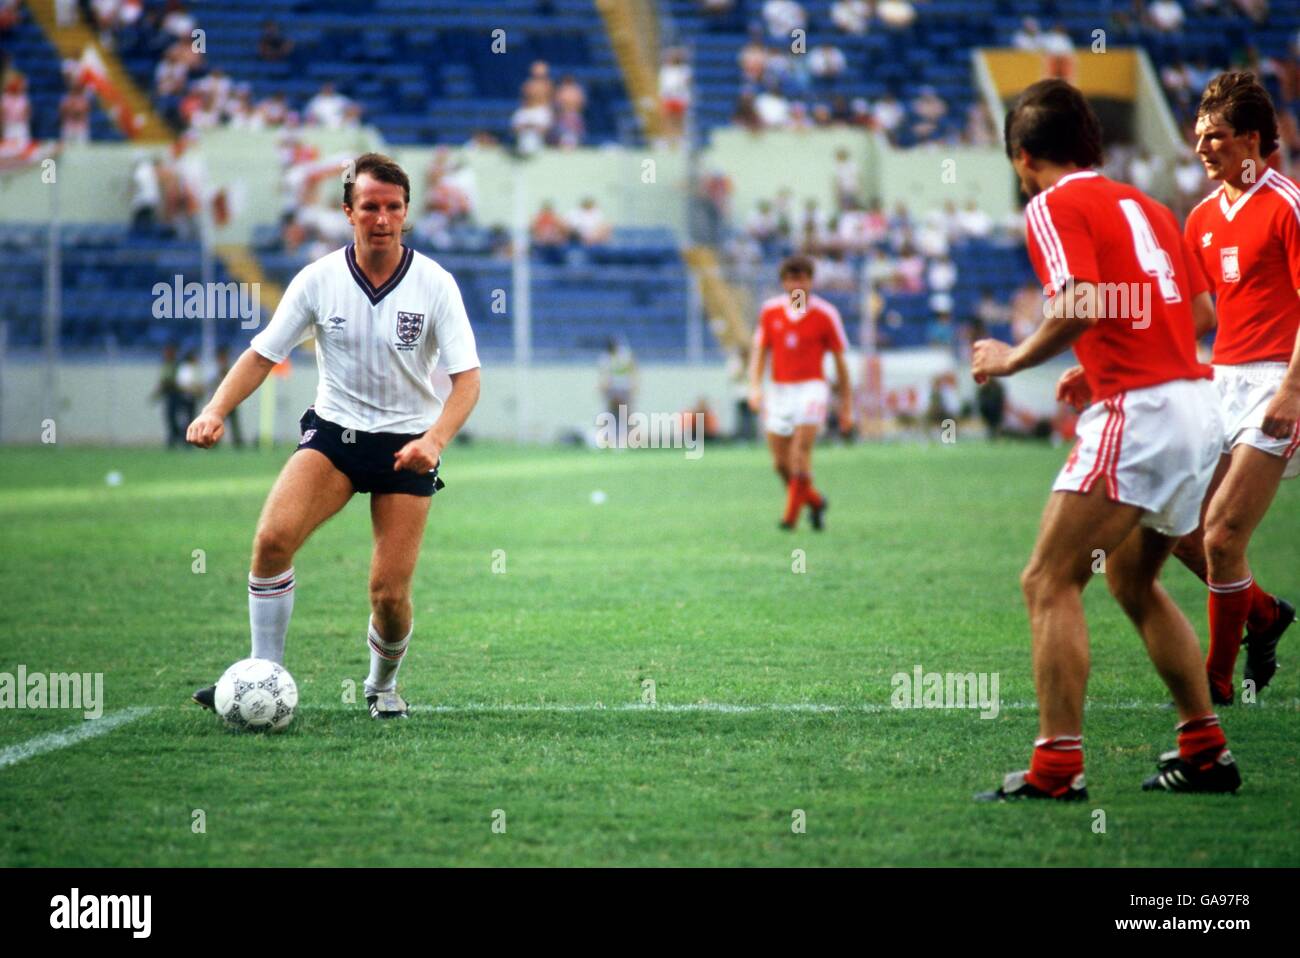 Calcio - Coppa del mondo Messico 86 - Gruppo F - Inghilterra / Polonia. Trevor Steven, in Inghilterra, si assume la difesa della Polonia Foto Stock